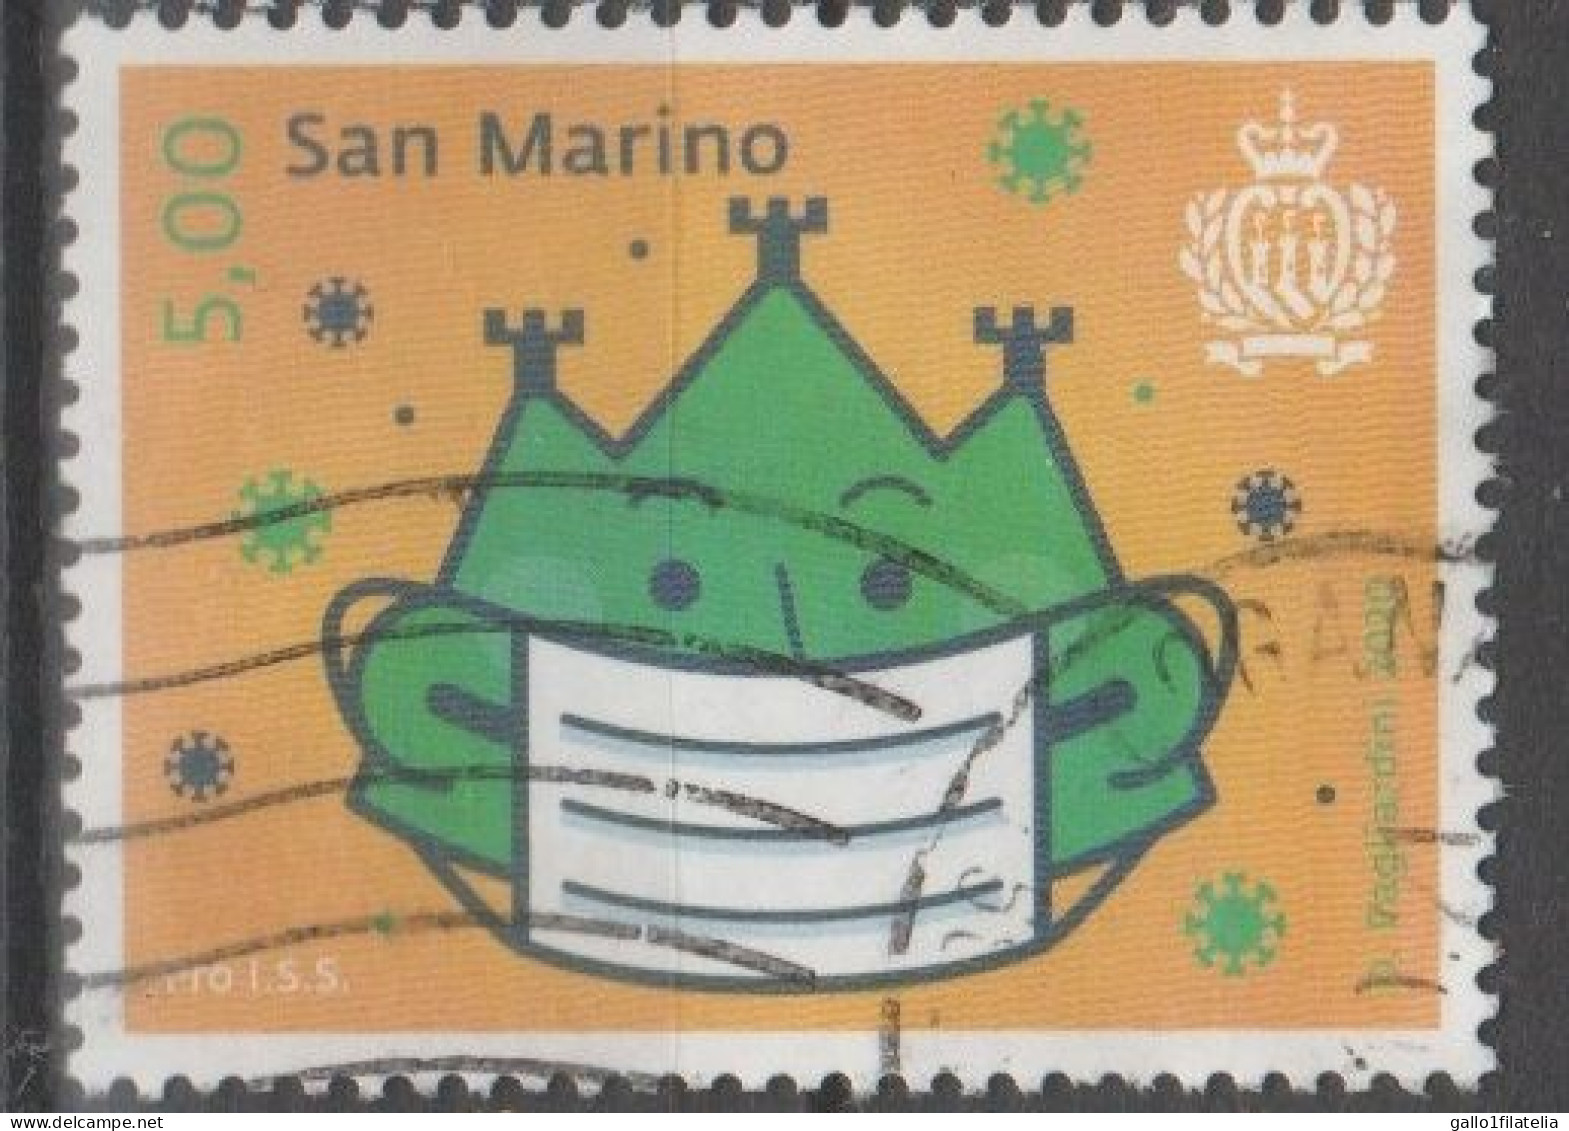 2020 - SAN MARINO - LOTTA AL COVID -  PRO ISTITUTO PER LA SICUREZZA SOCIALE / PRO INSTITUTE FOR SOCIAL SECURITY - USATO - Used Stamps